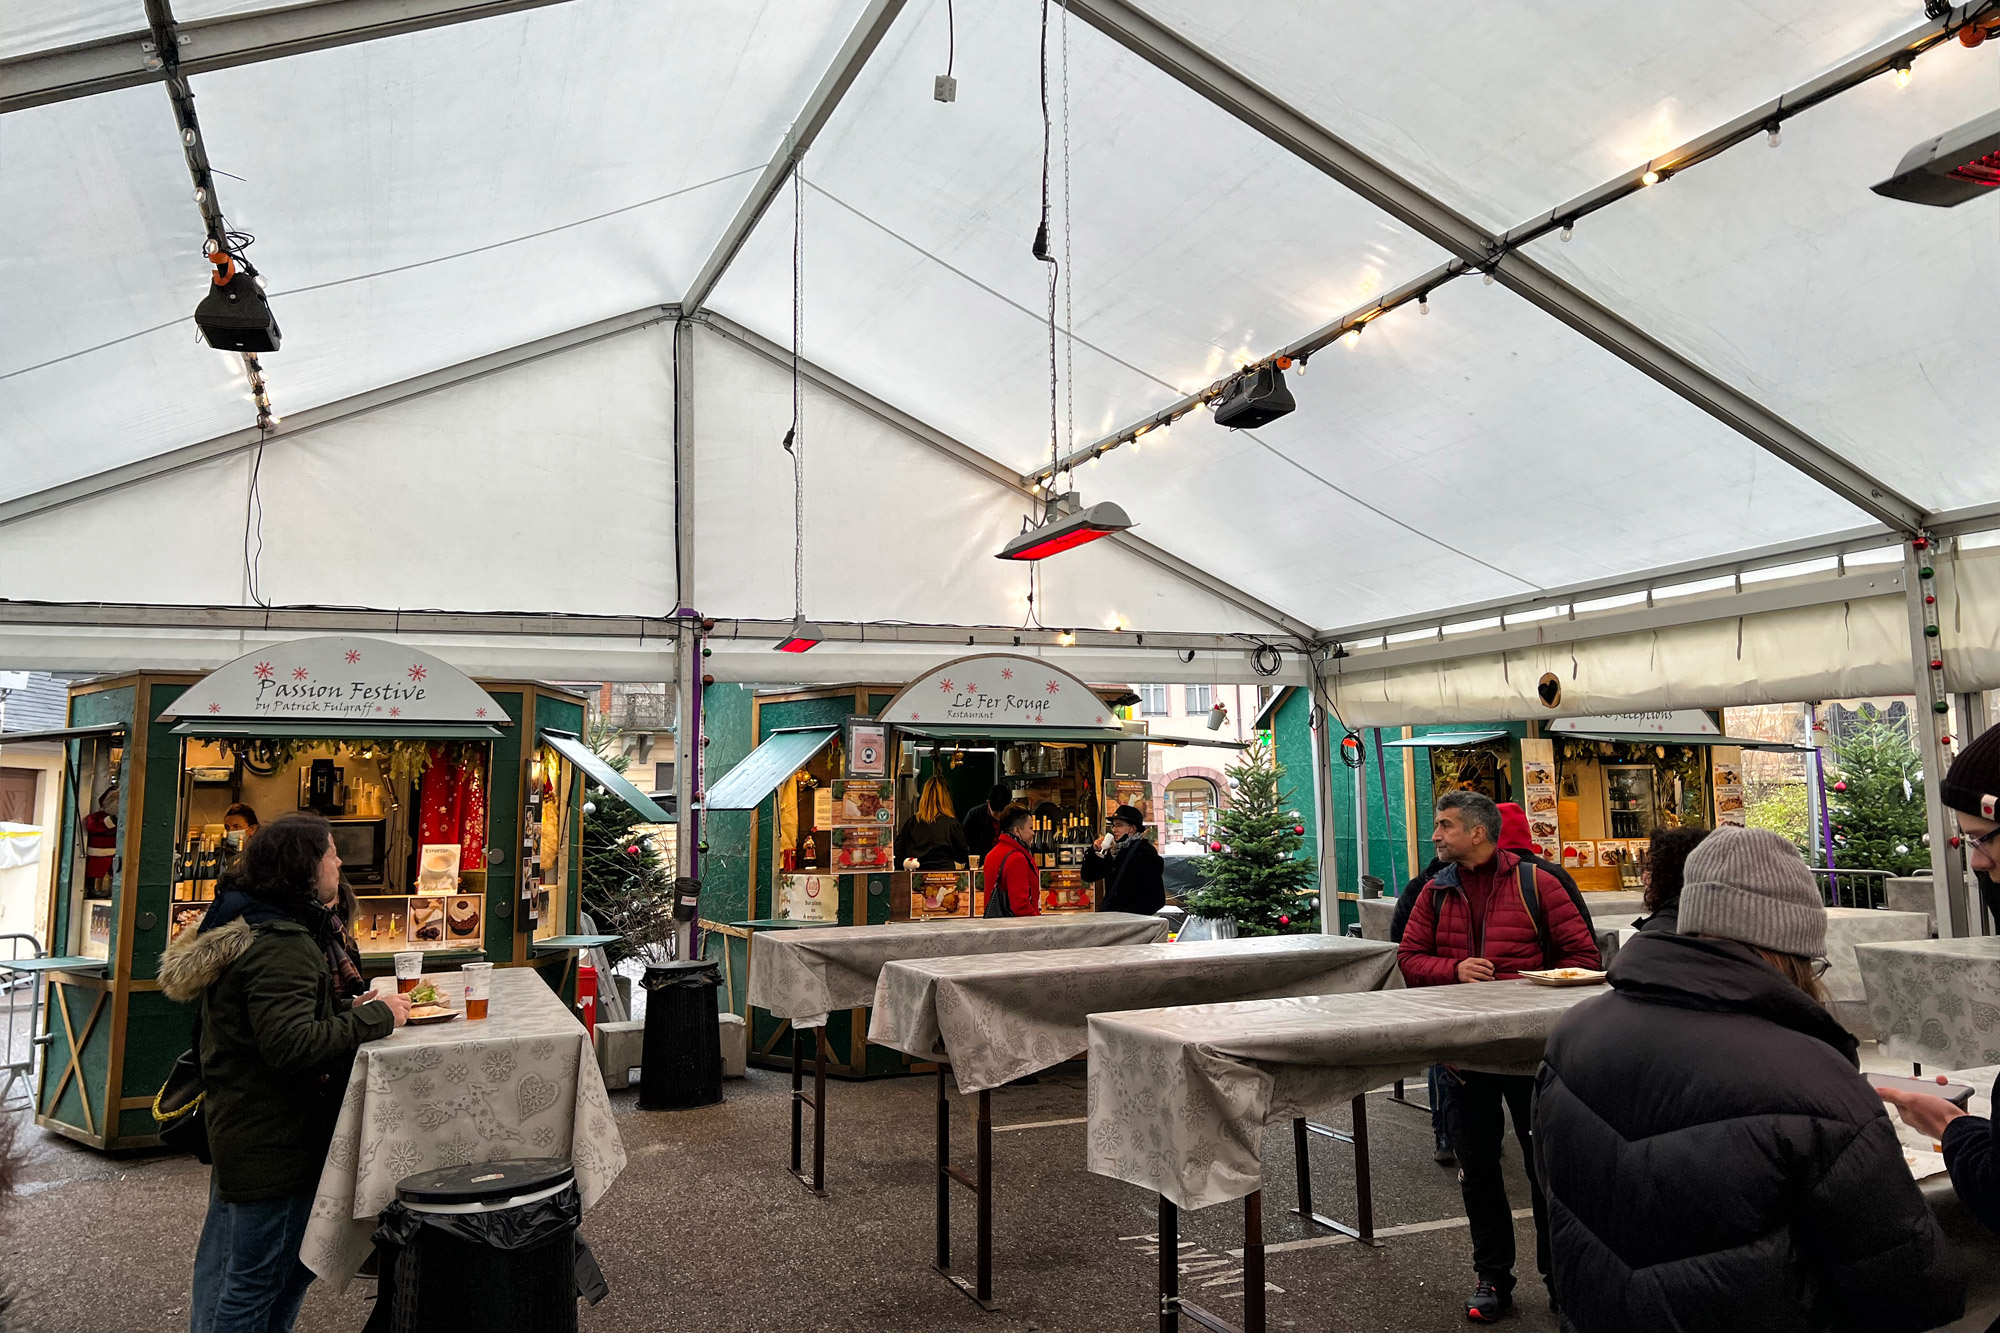 Kerstmarkt van Colmar